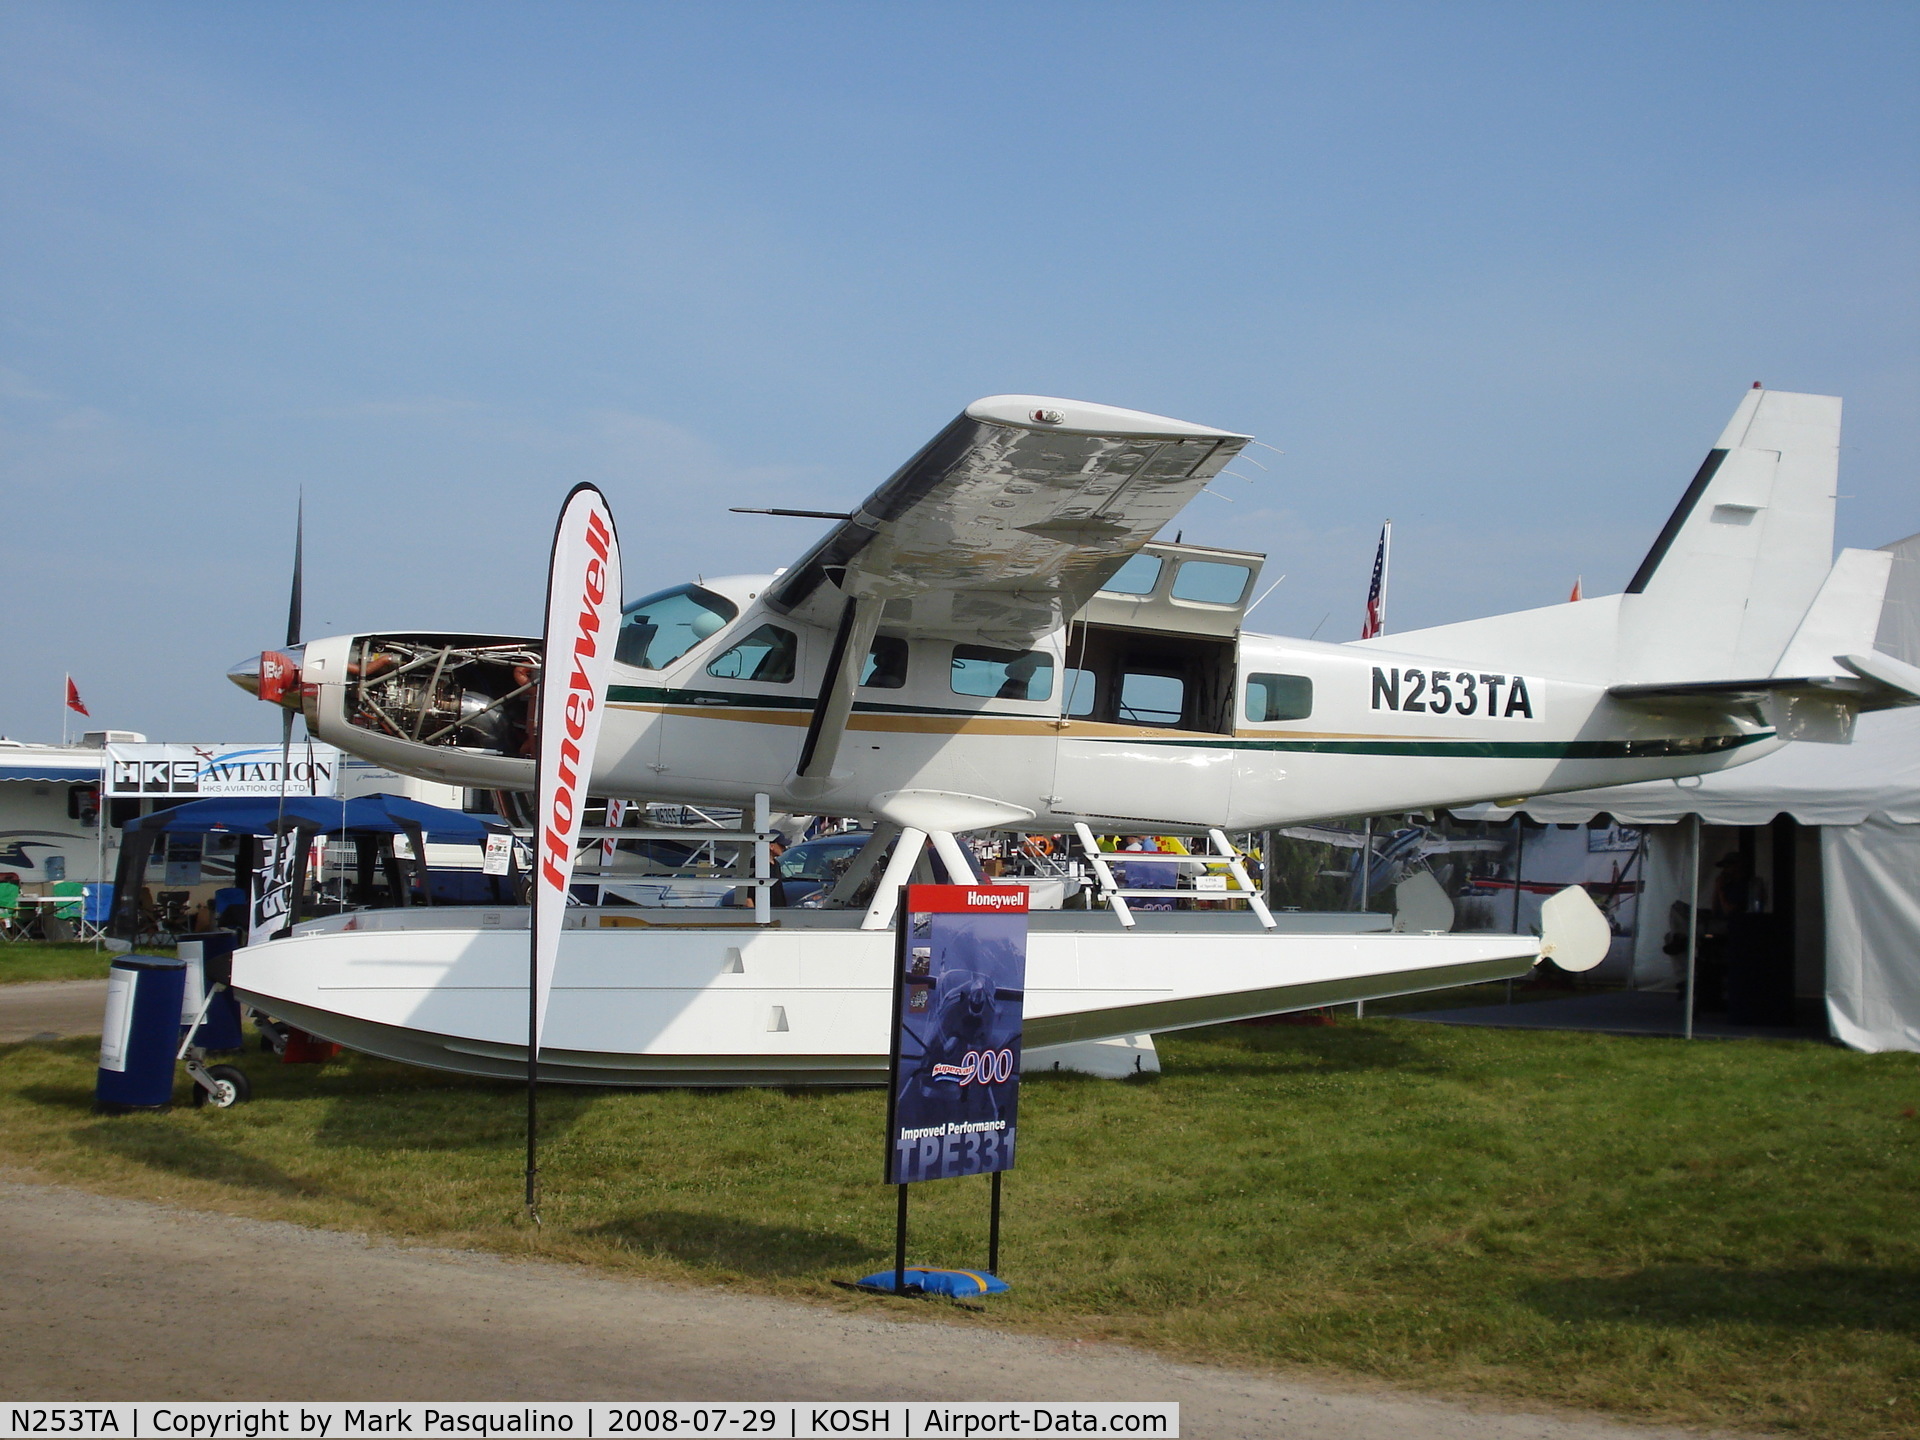 N253TA, 1992 Cessna 208 C/N 20800222, Cessna 208